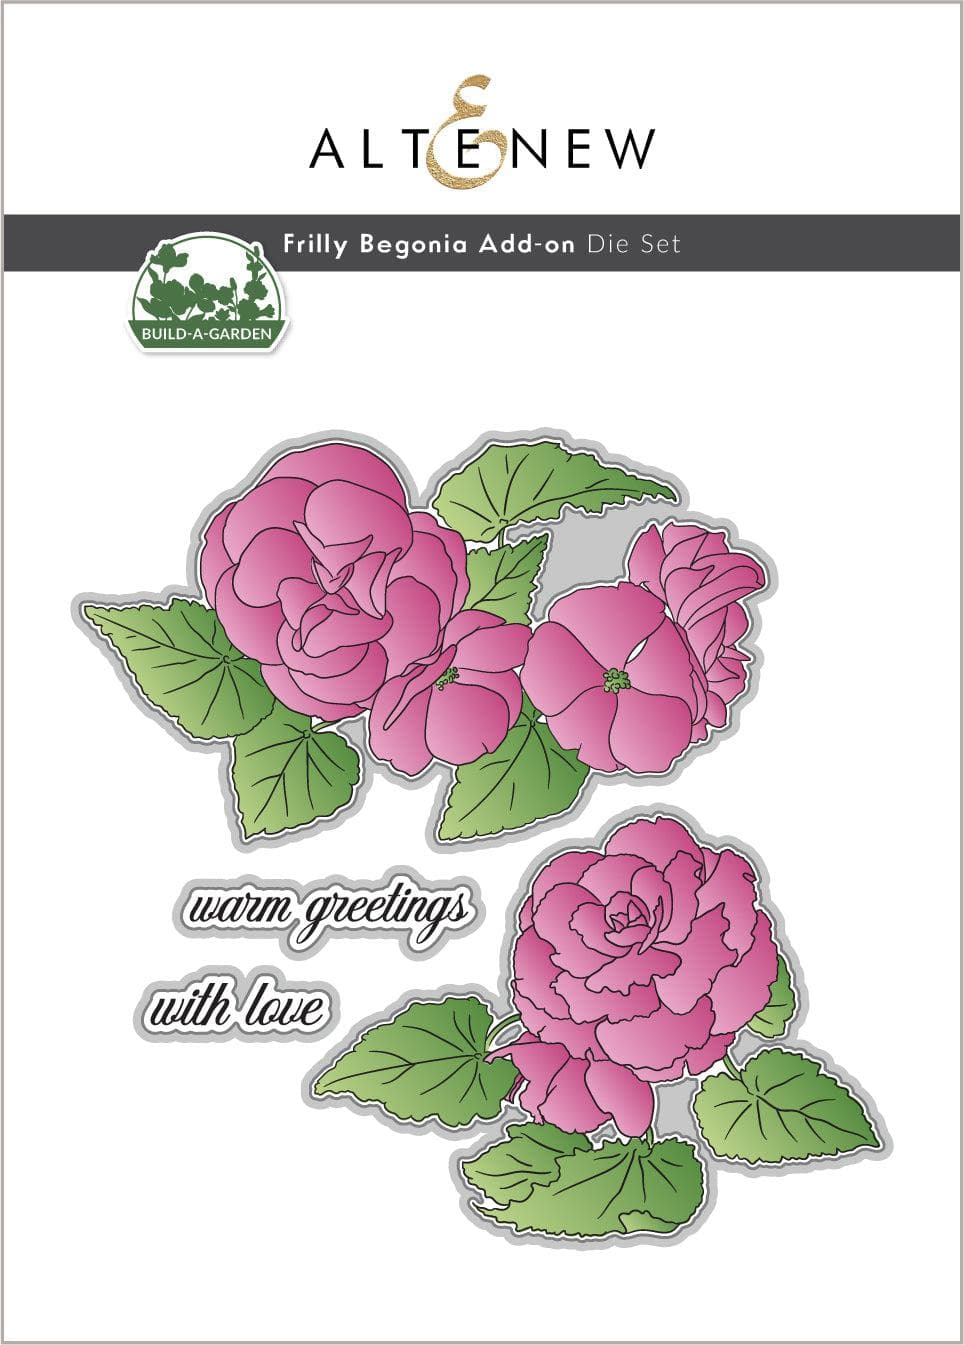 Build-A-Garden: Frilly Begonia Add-on Die Set